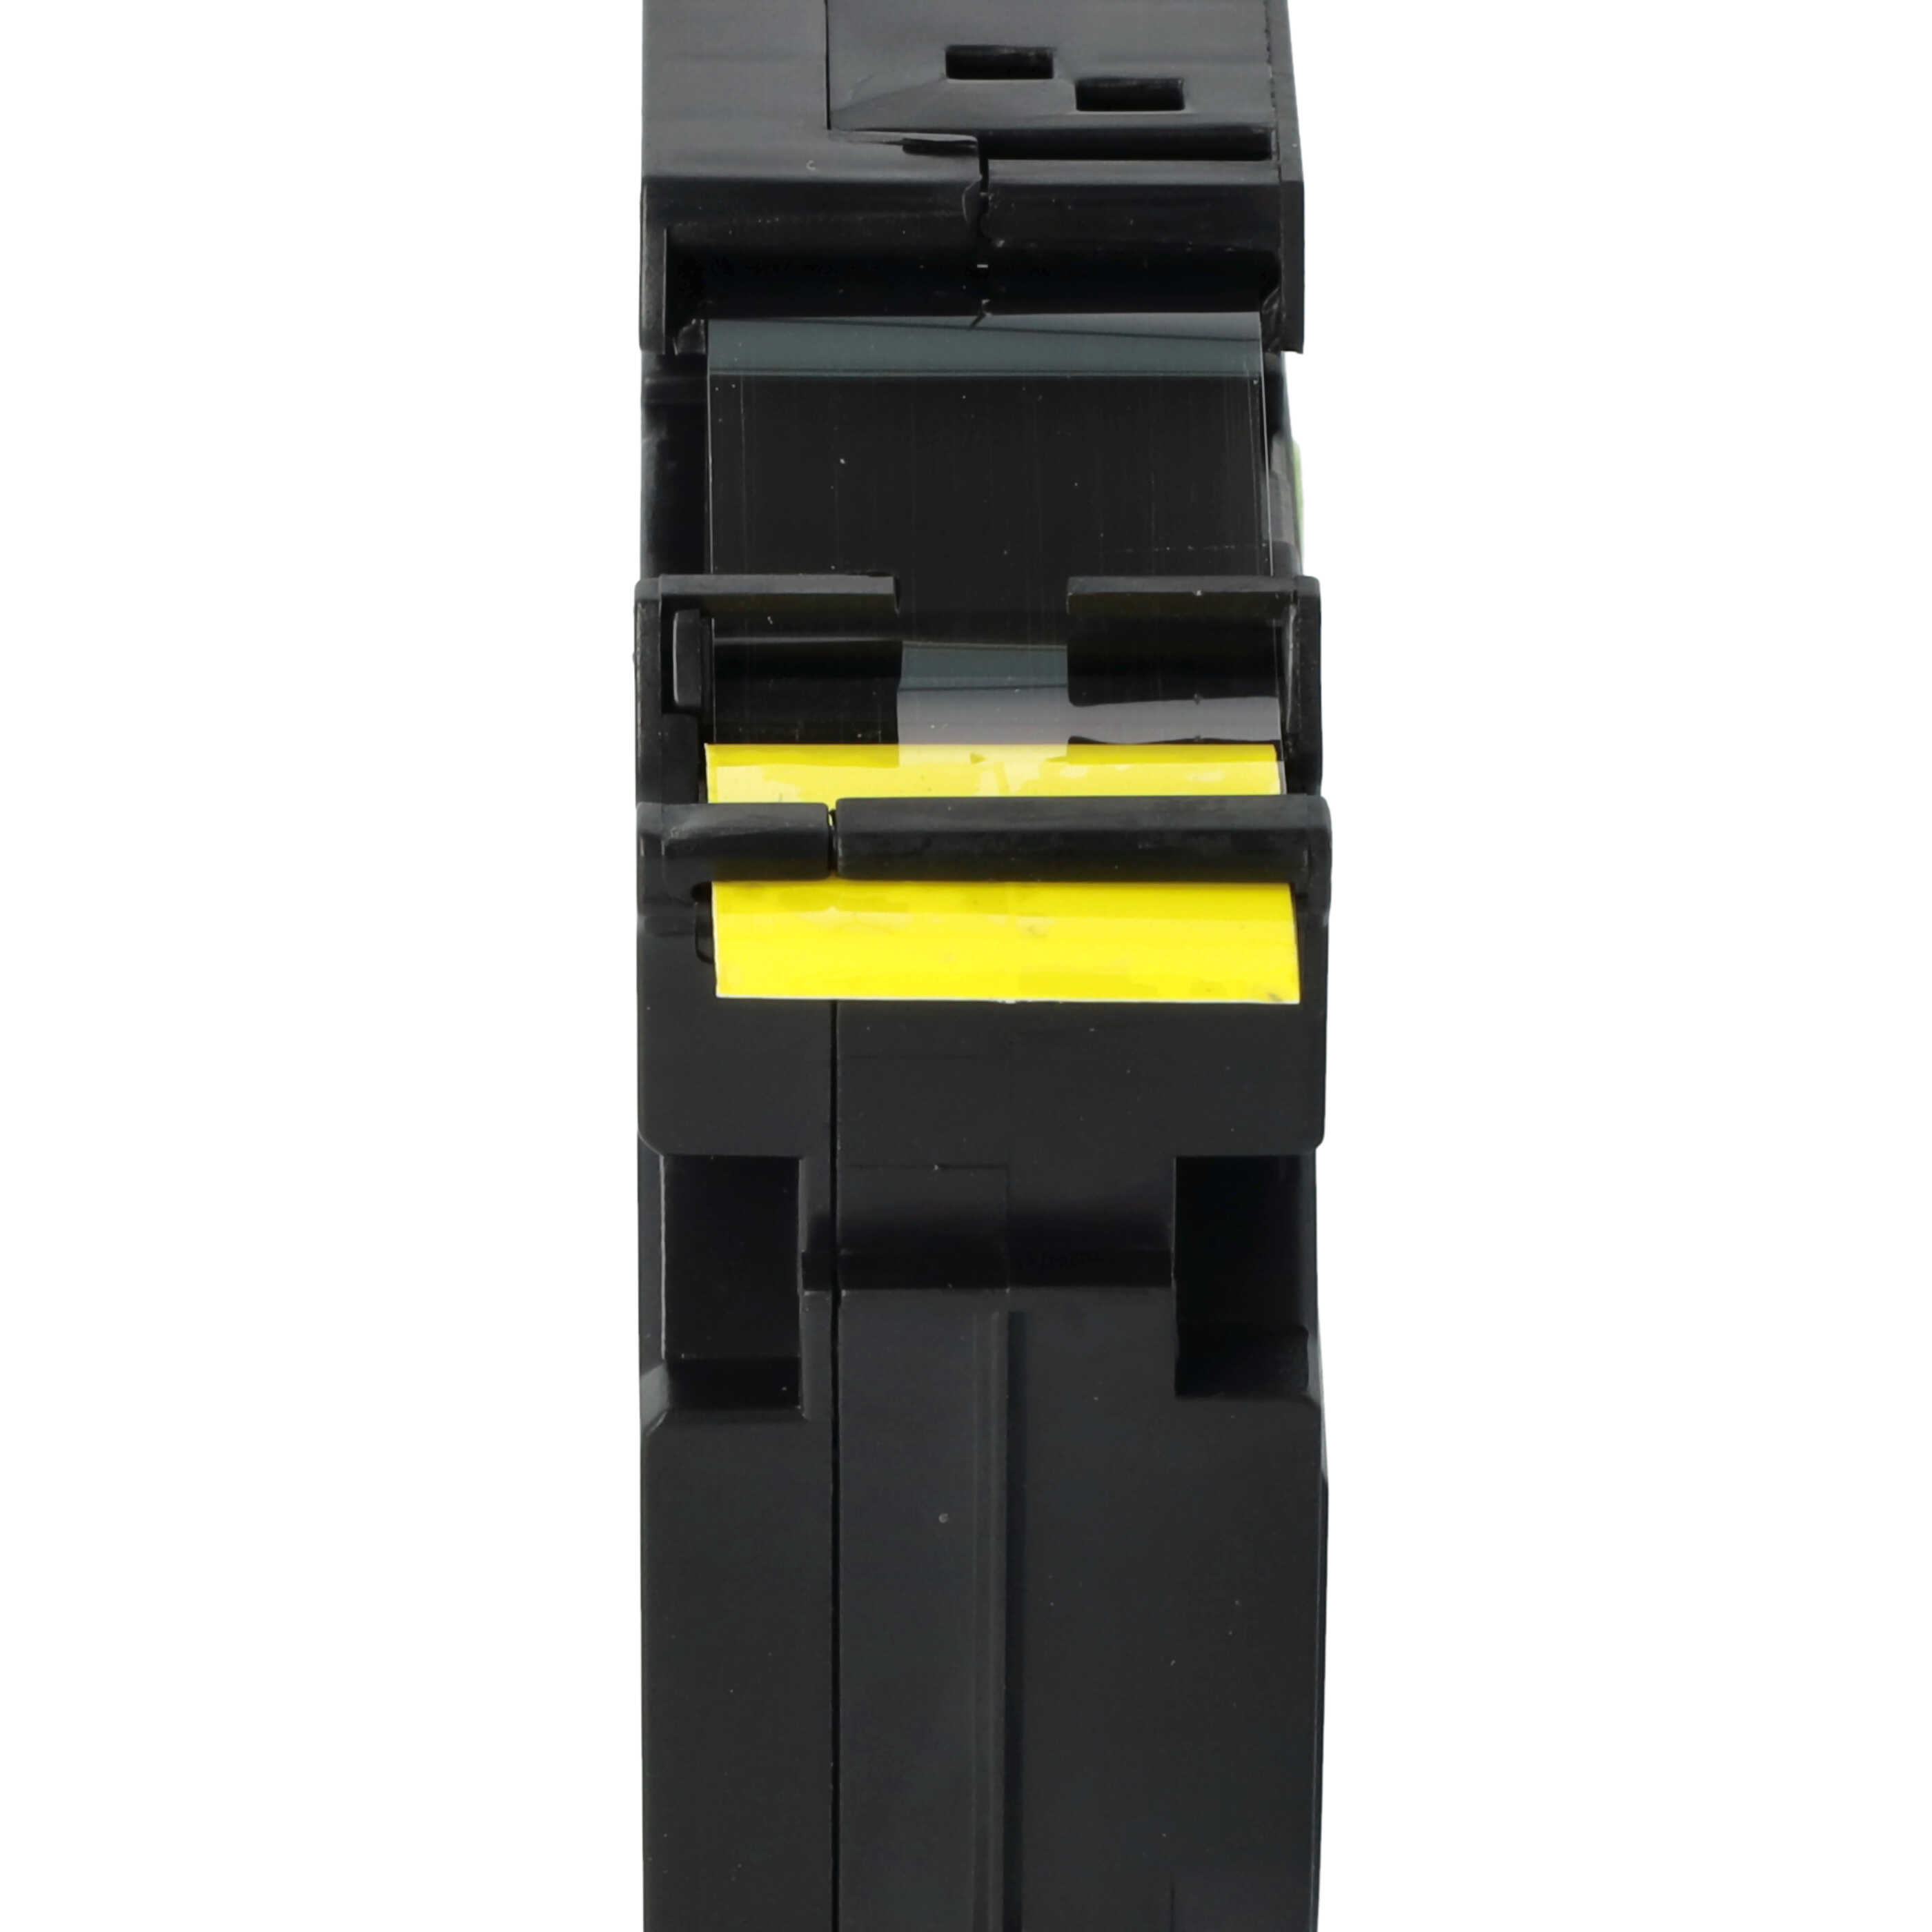 Taśma do etykiet zam. Brother TZE-S641 - 18mm, napis czarny / taśma żółta, bardzo mocna